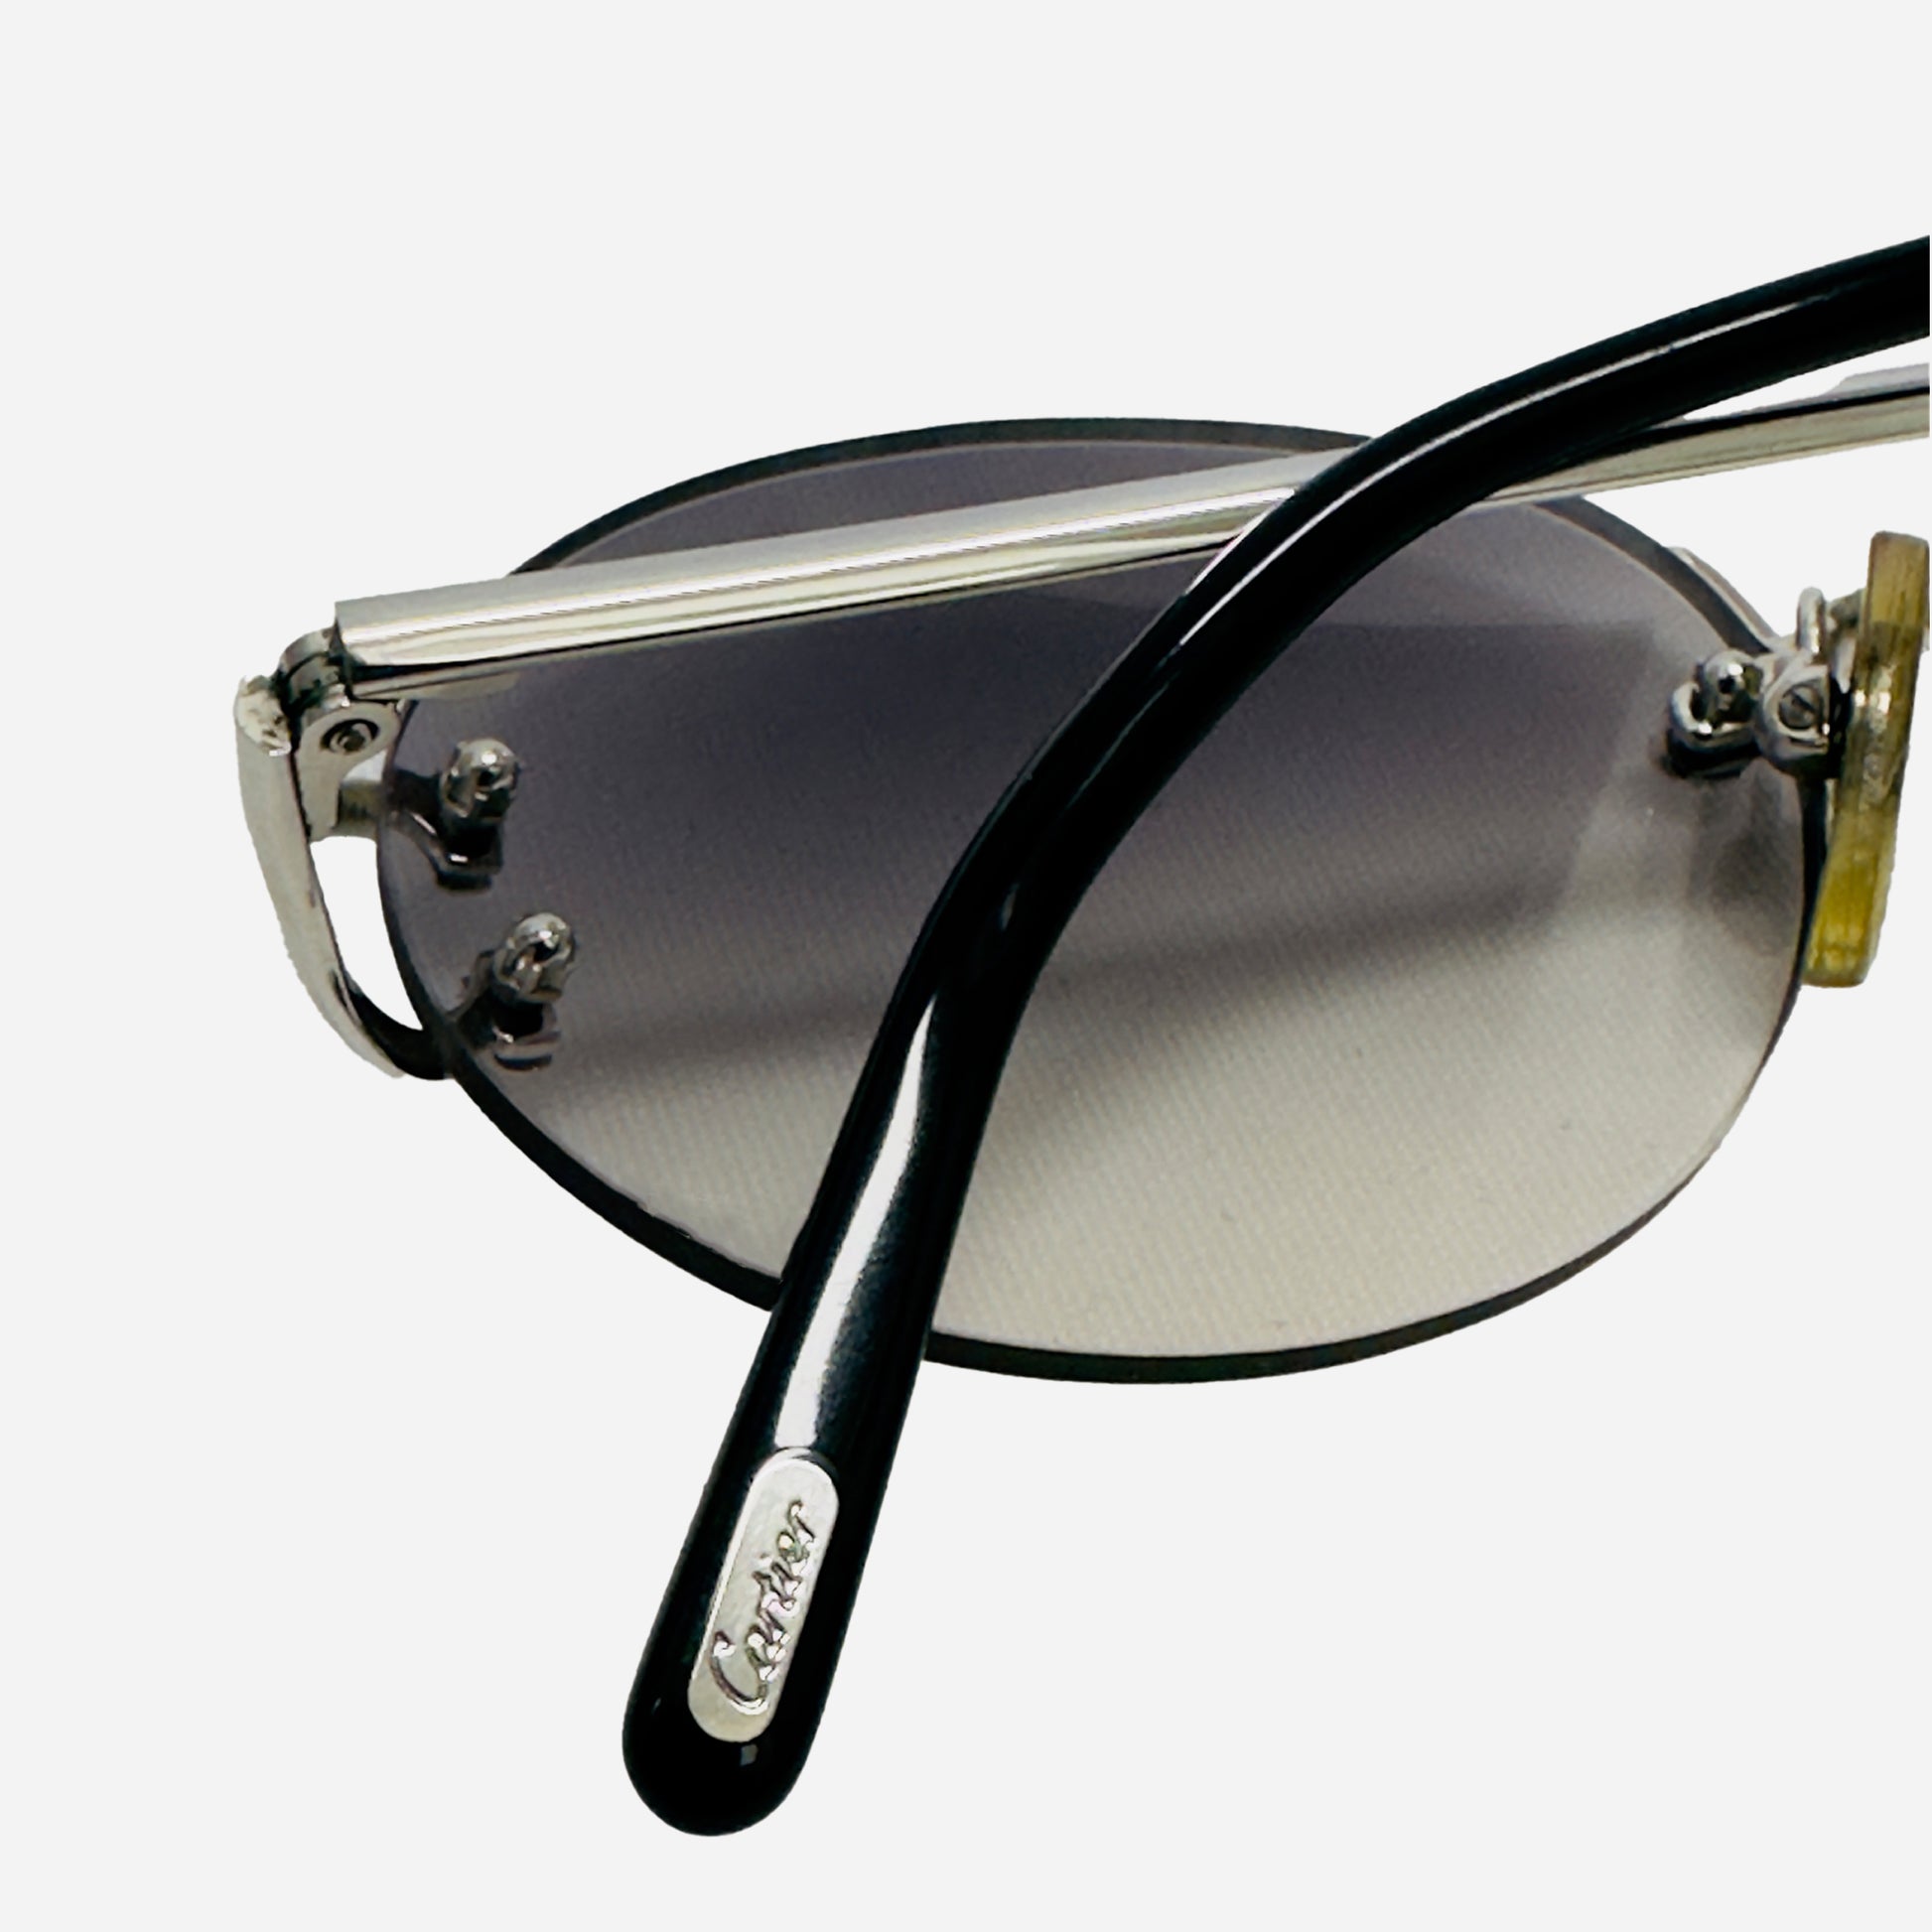 Vintage-Cartier-Sonnenbrille-Sunglasses-Little-C-Size-18-Platin-designer-the-seekers-sunglasses-back-temple-detail-cartier-engravement